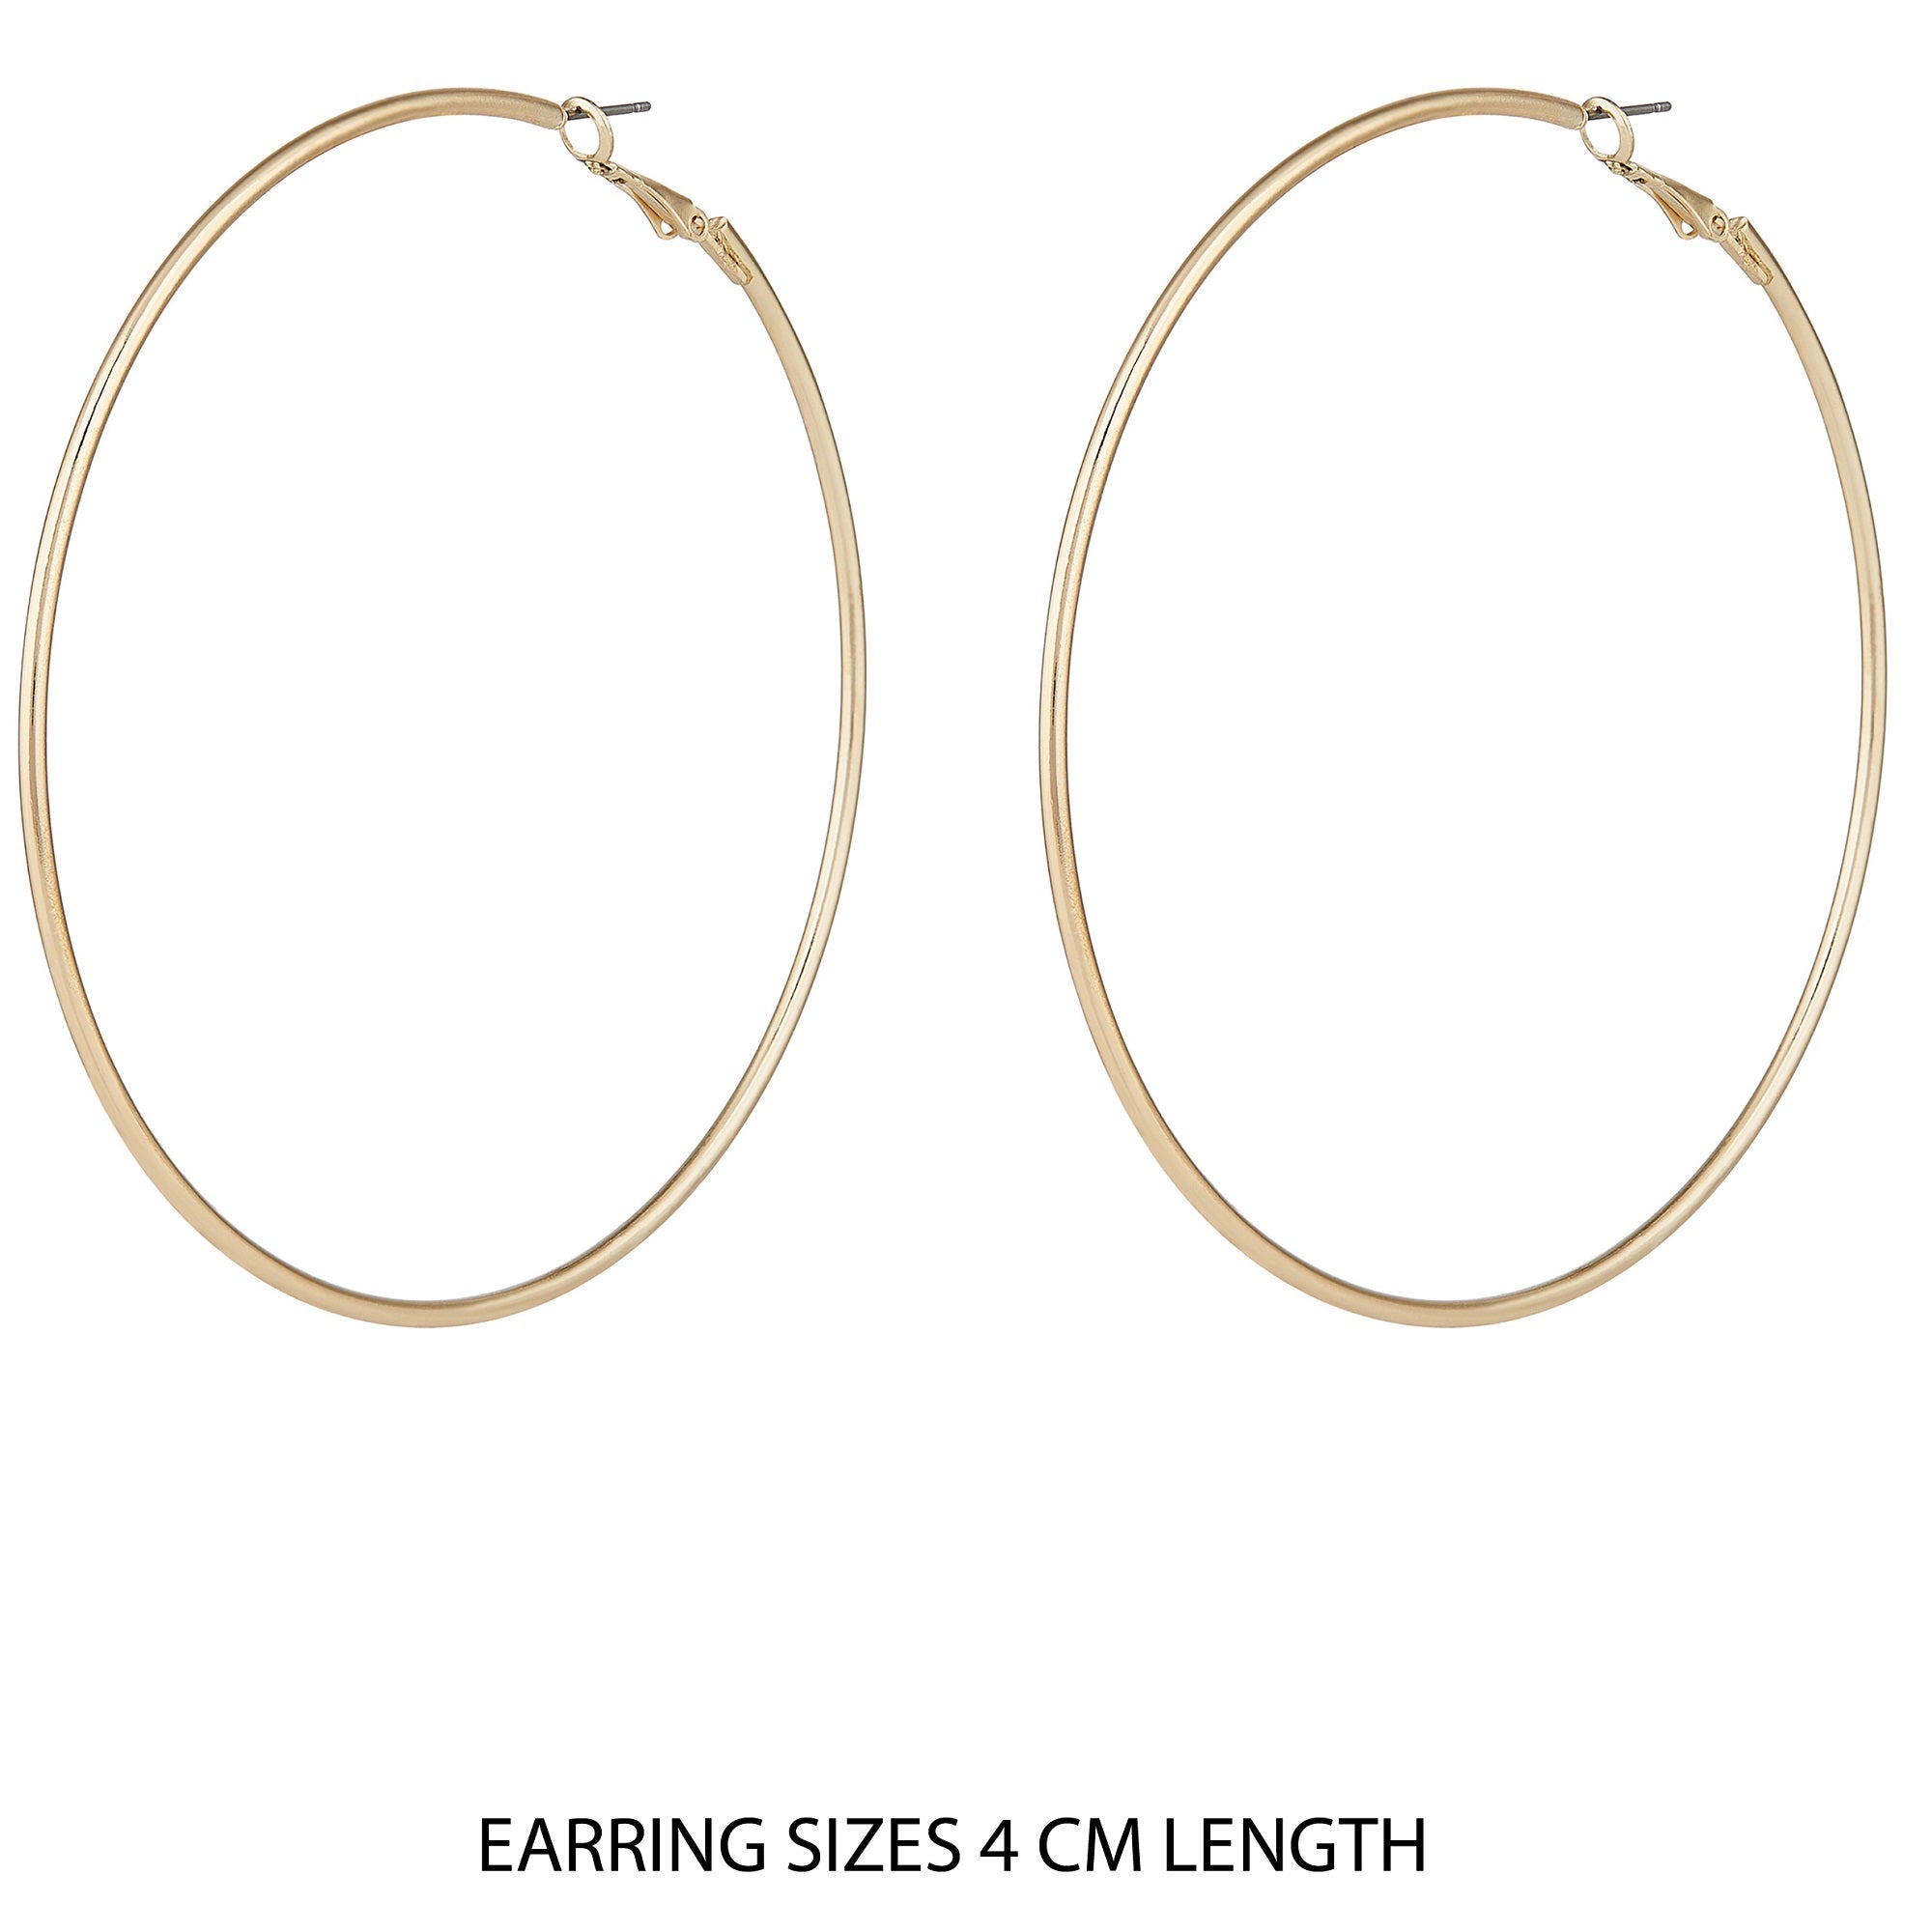 Buy Symmetrical Twisted Gold Hoop Earrings Online from Vaibhav Jewellers